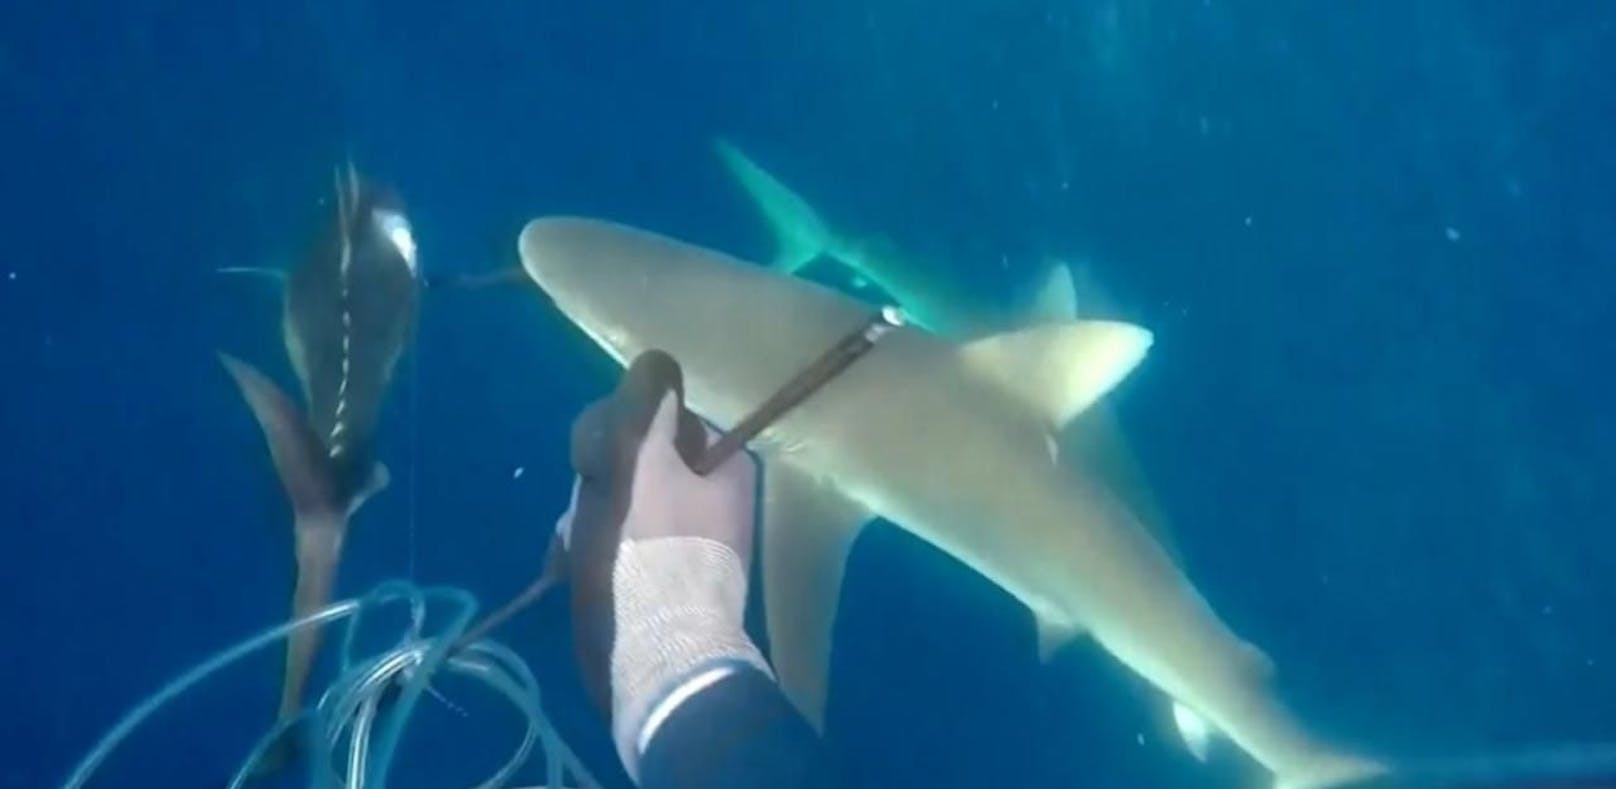 Speerfischer kämpft mit zwei Haien um Beute